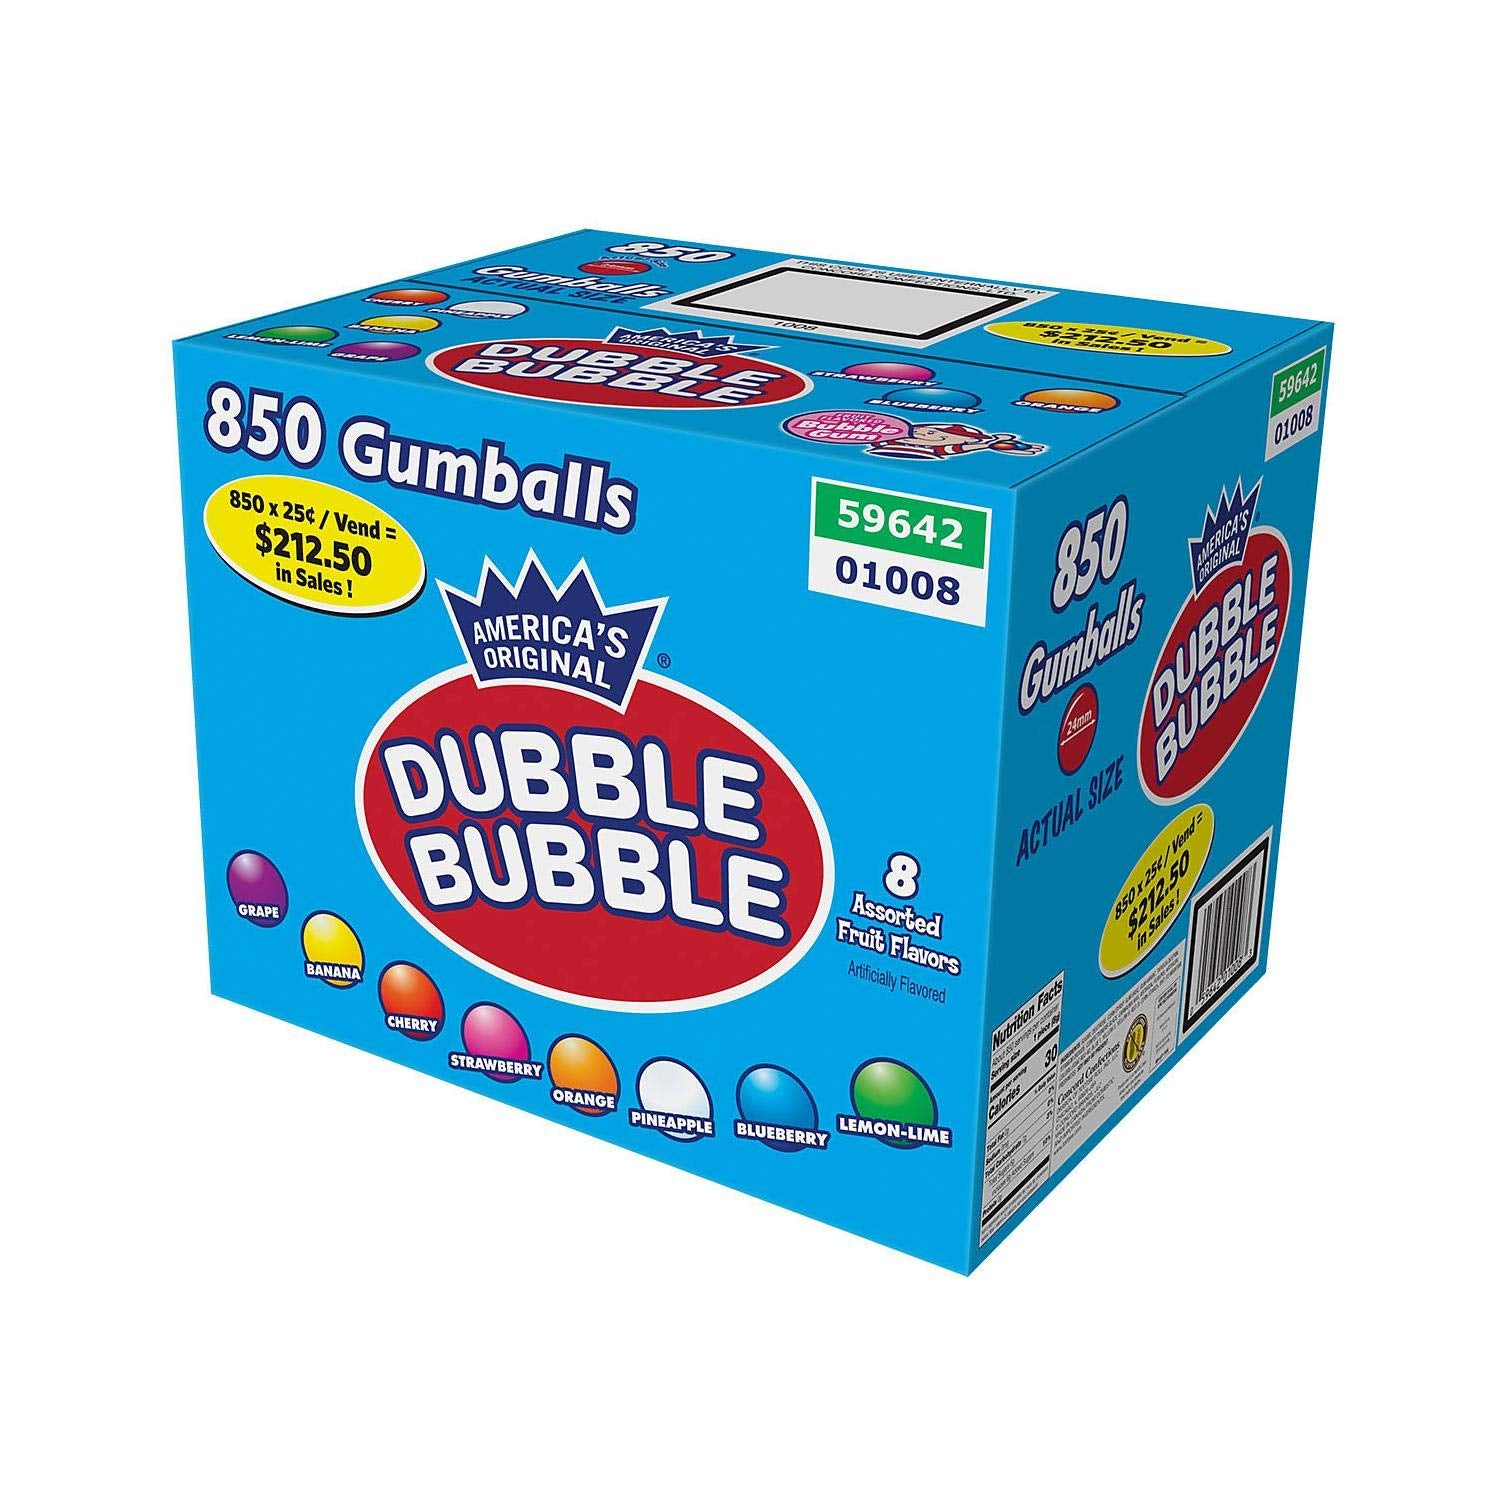 Dubble Bubble gumballs 850 ct